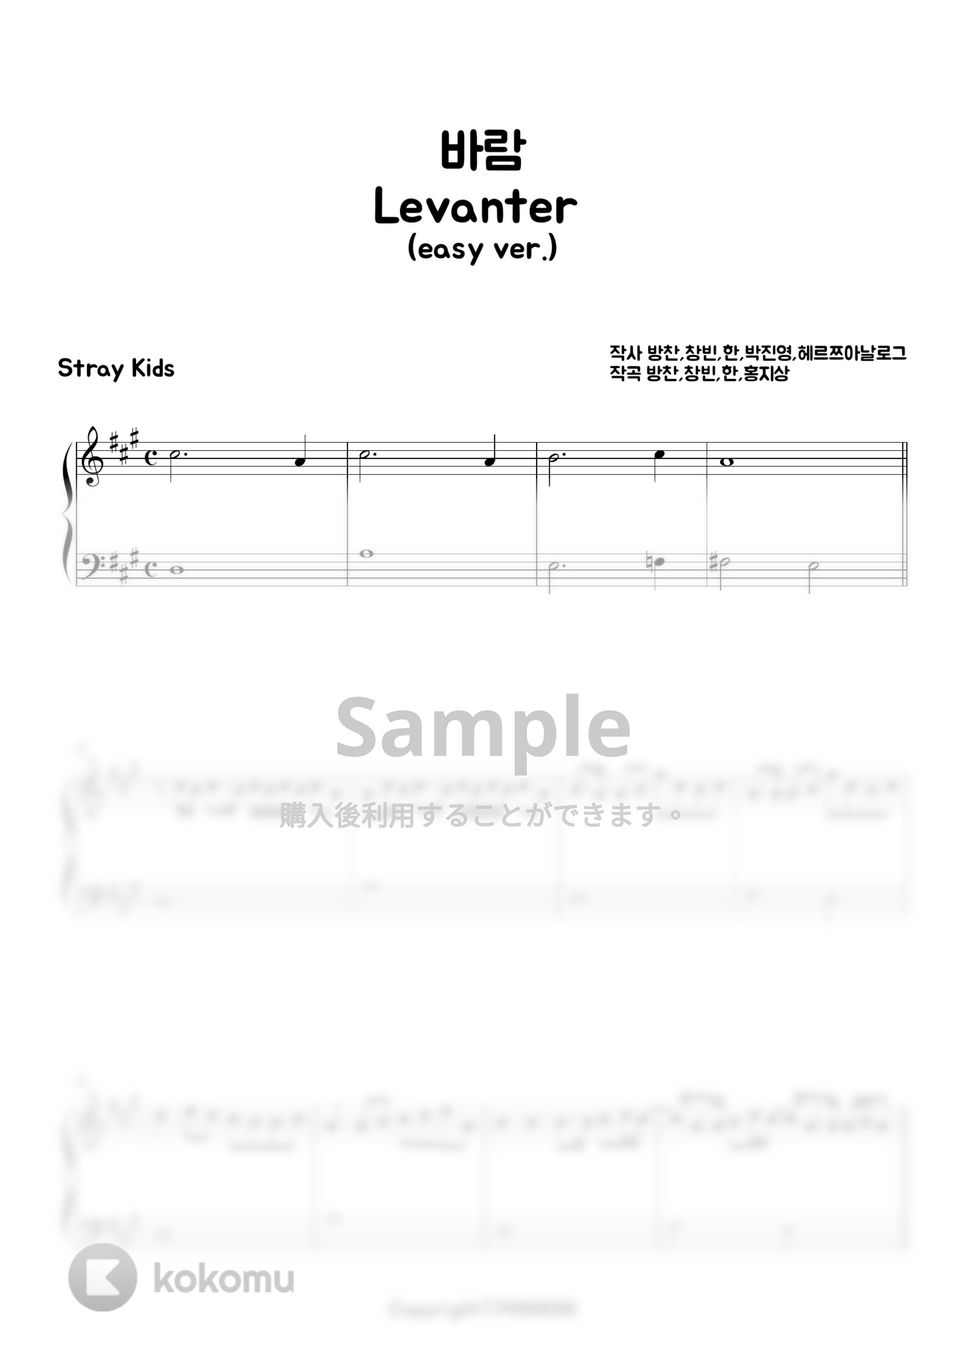 Stray Kids (ストレイキッズ) - LEVANTER (Easy ver.) by MINIBINI